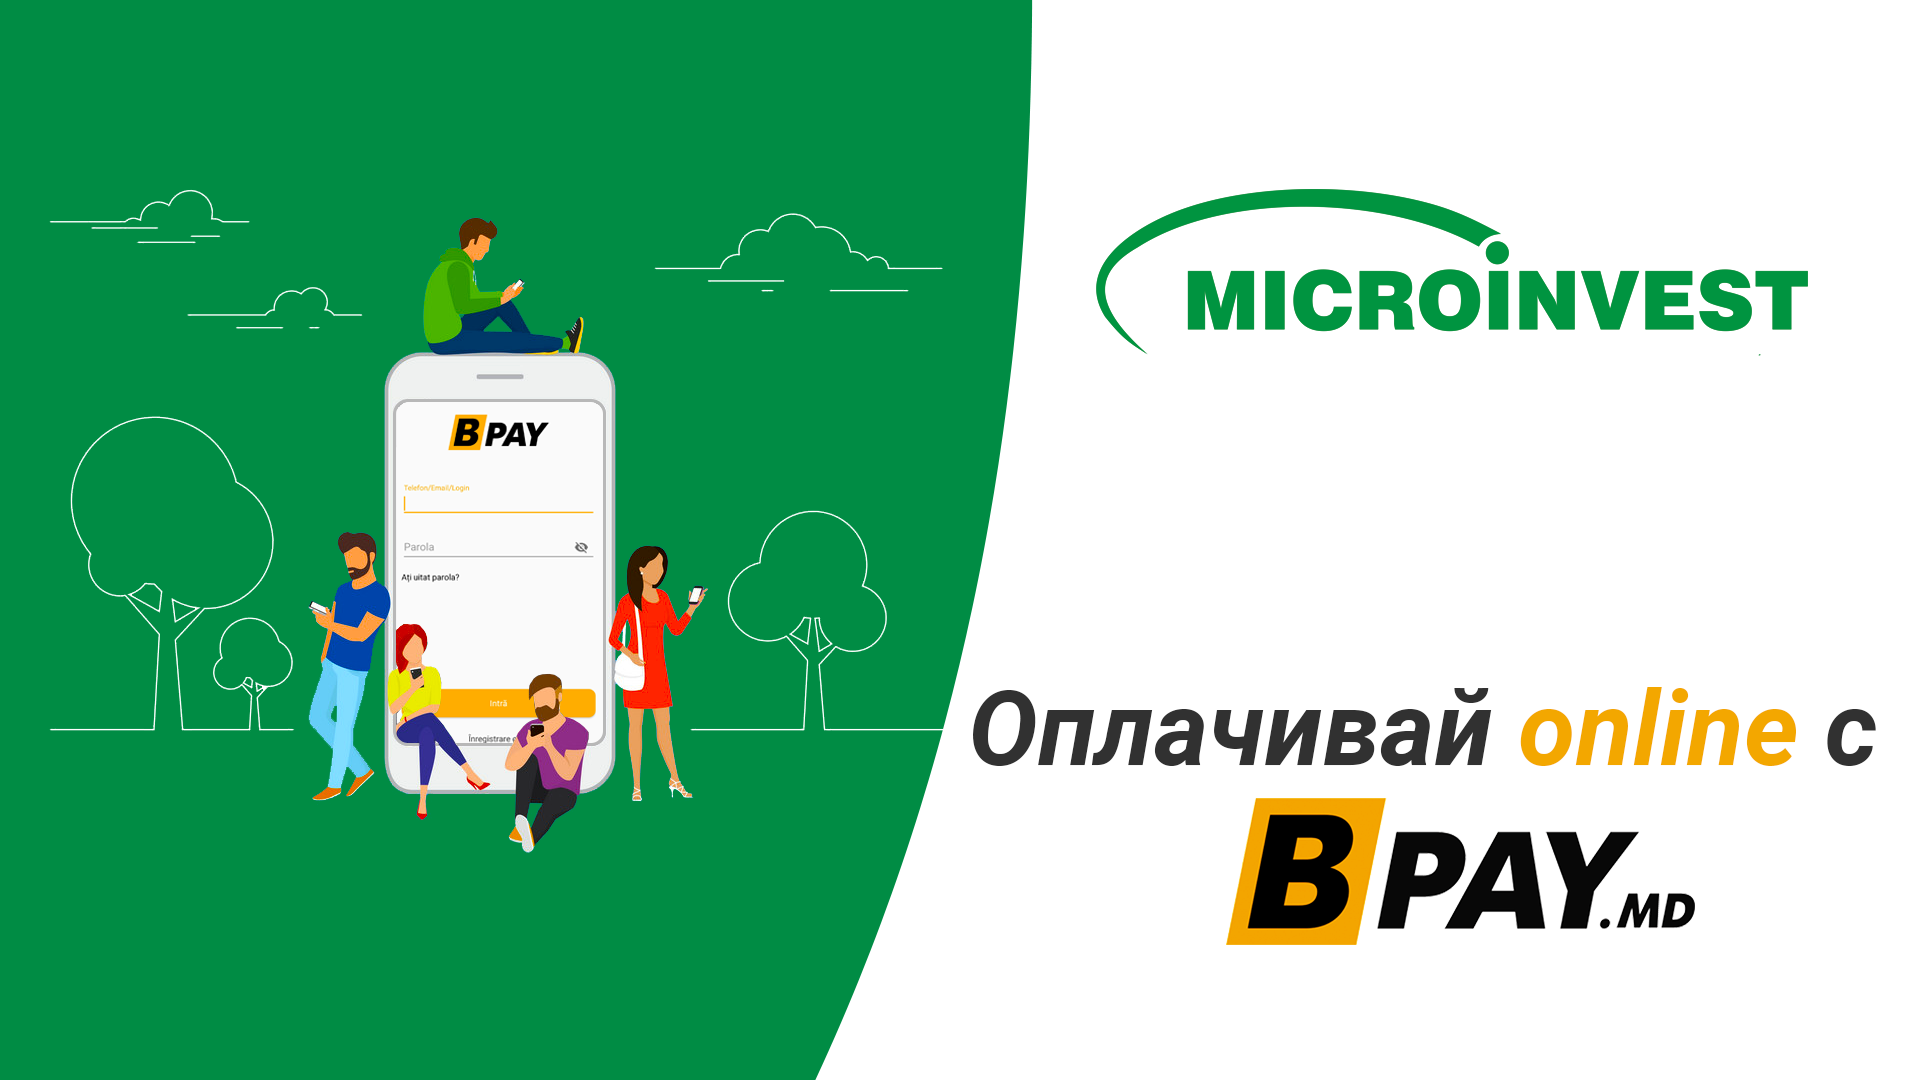 Выплачивайте кредит от Microinvest ONLINE, благодаря BPAY